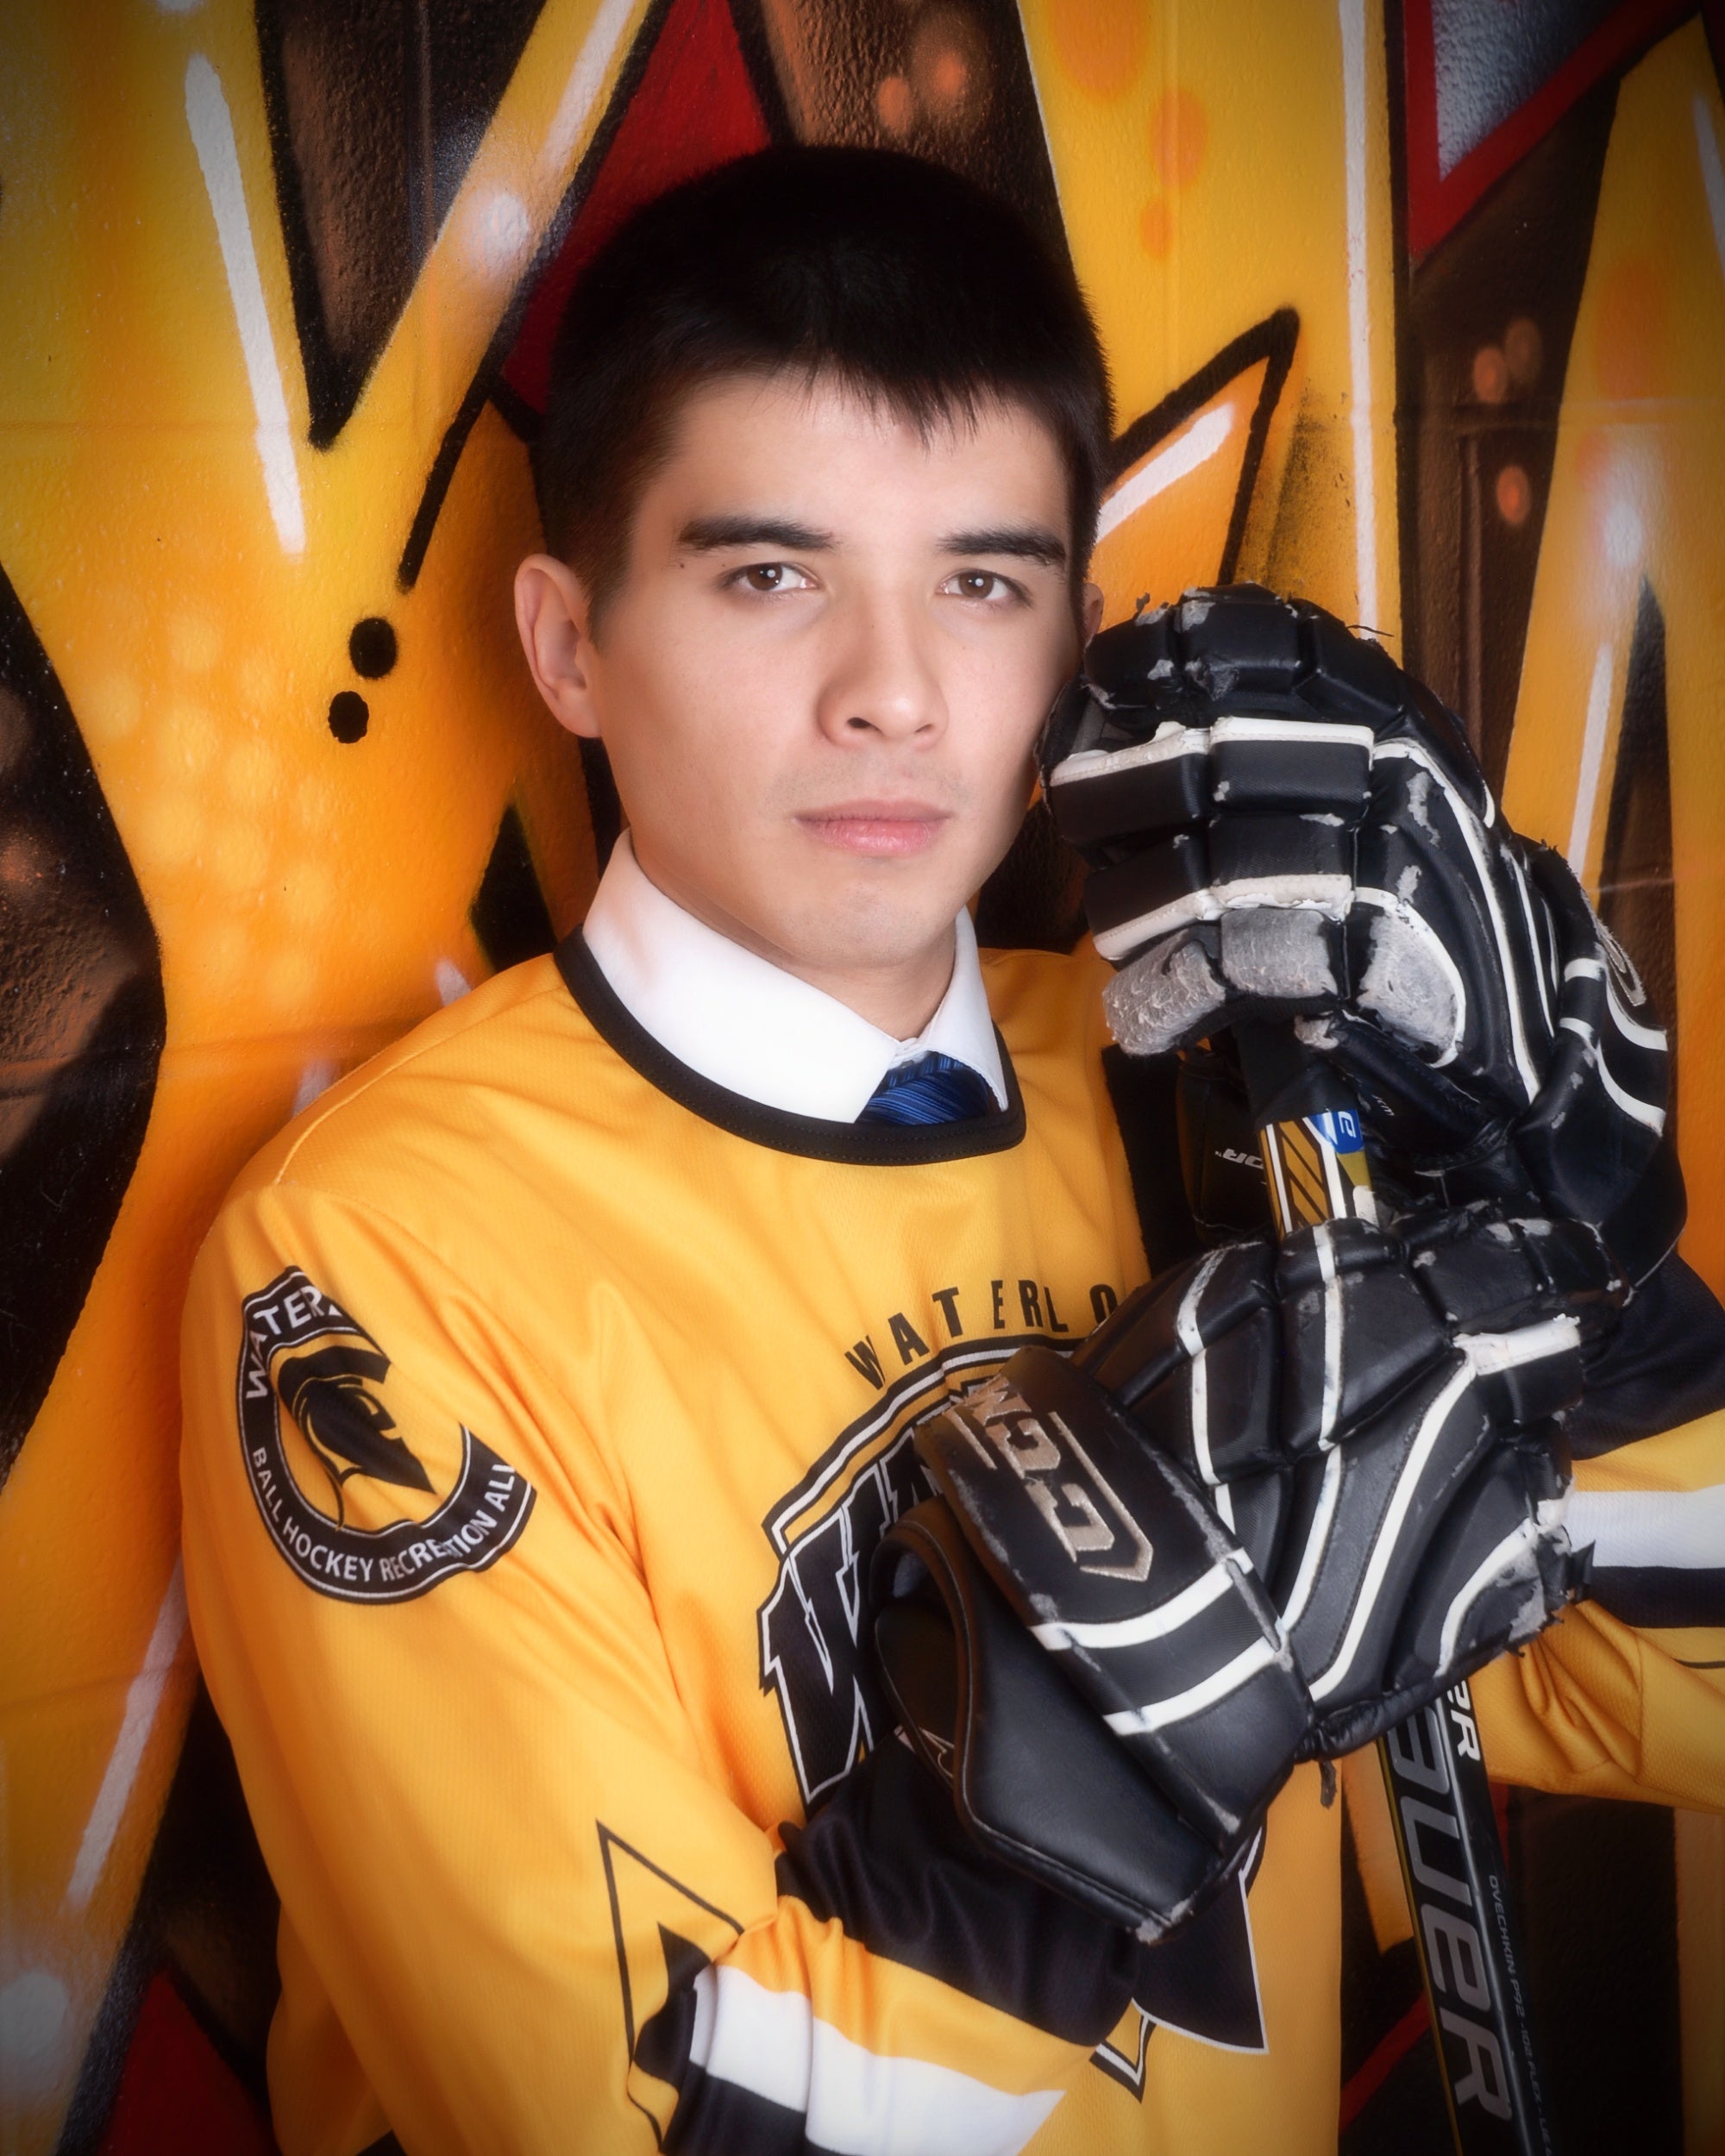 Joseph Wang posing in his University of Waterloo hockey gear and uniform.